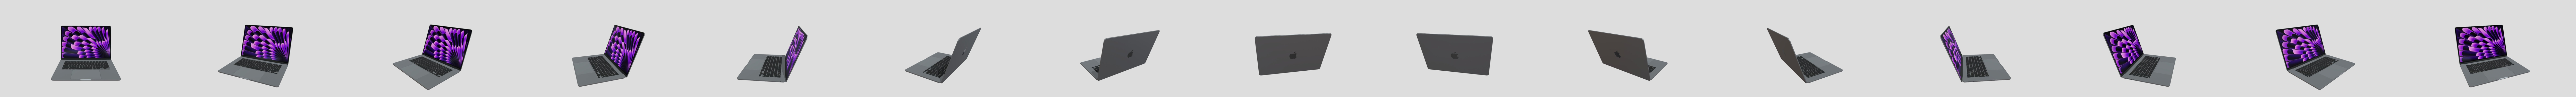 modèle 3D de Apple MacBook Air 15 pouces 2023 - TurboSquid 2080457